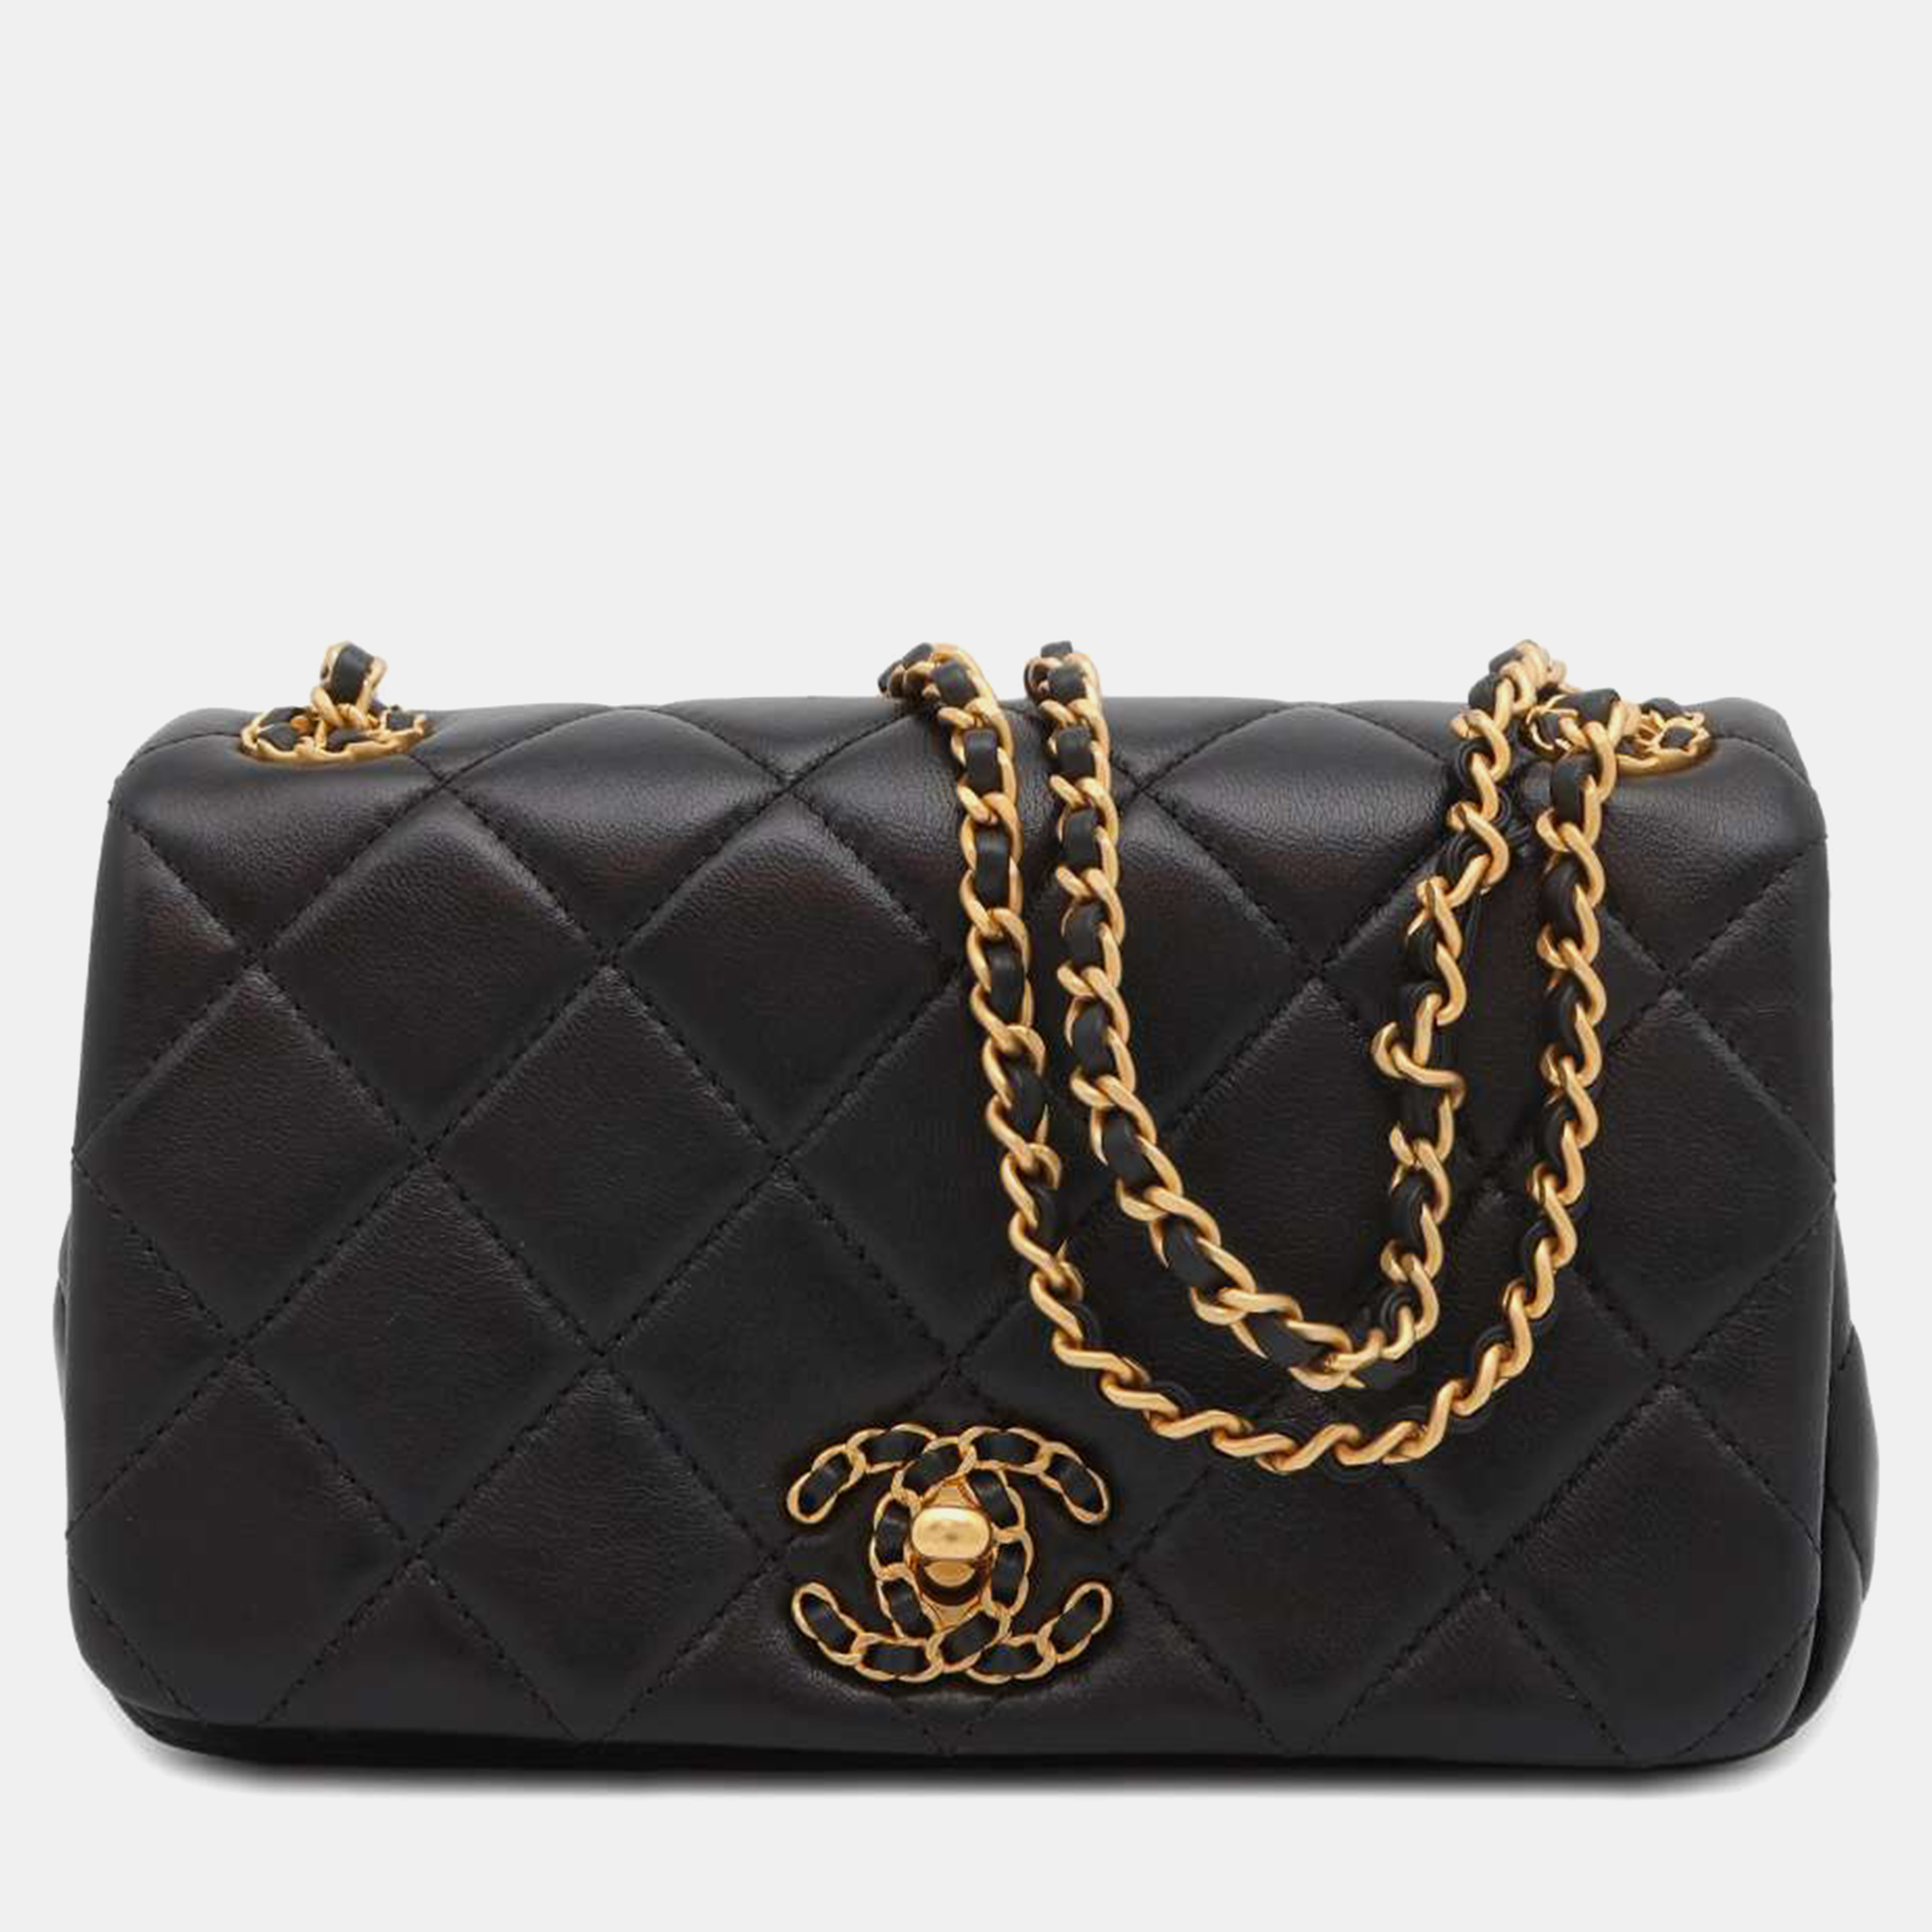 Chanel black lambskin mini flap bag